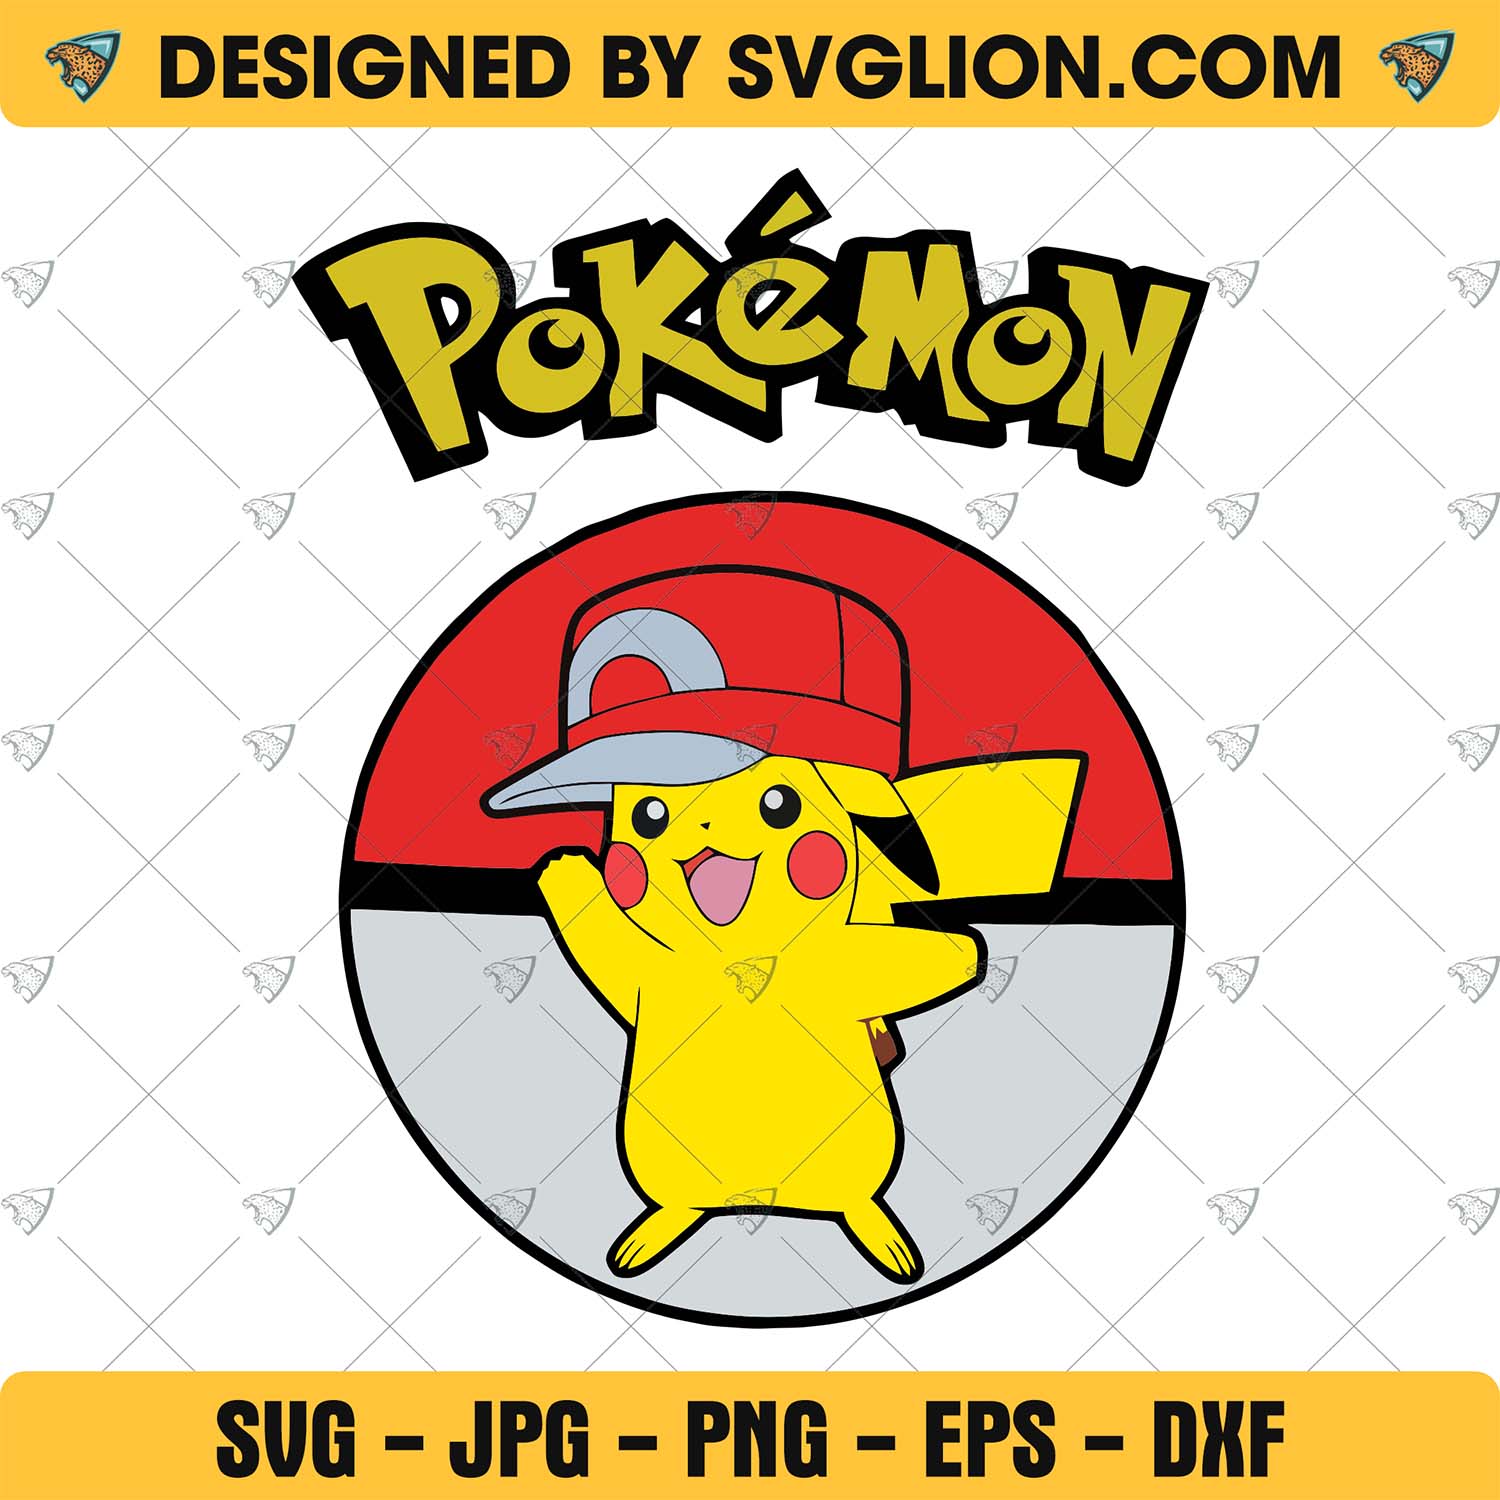 Pokémon Pikachu SVG 